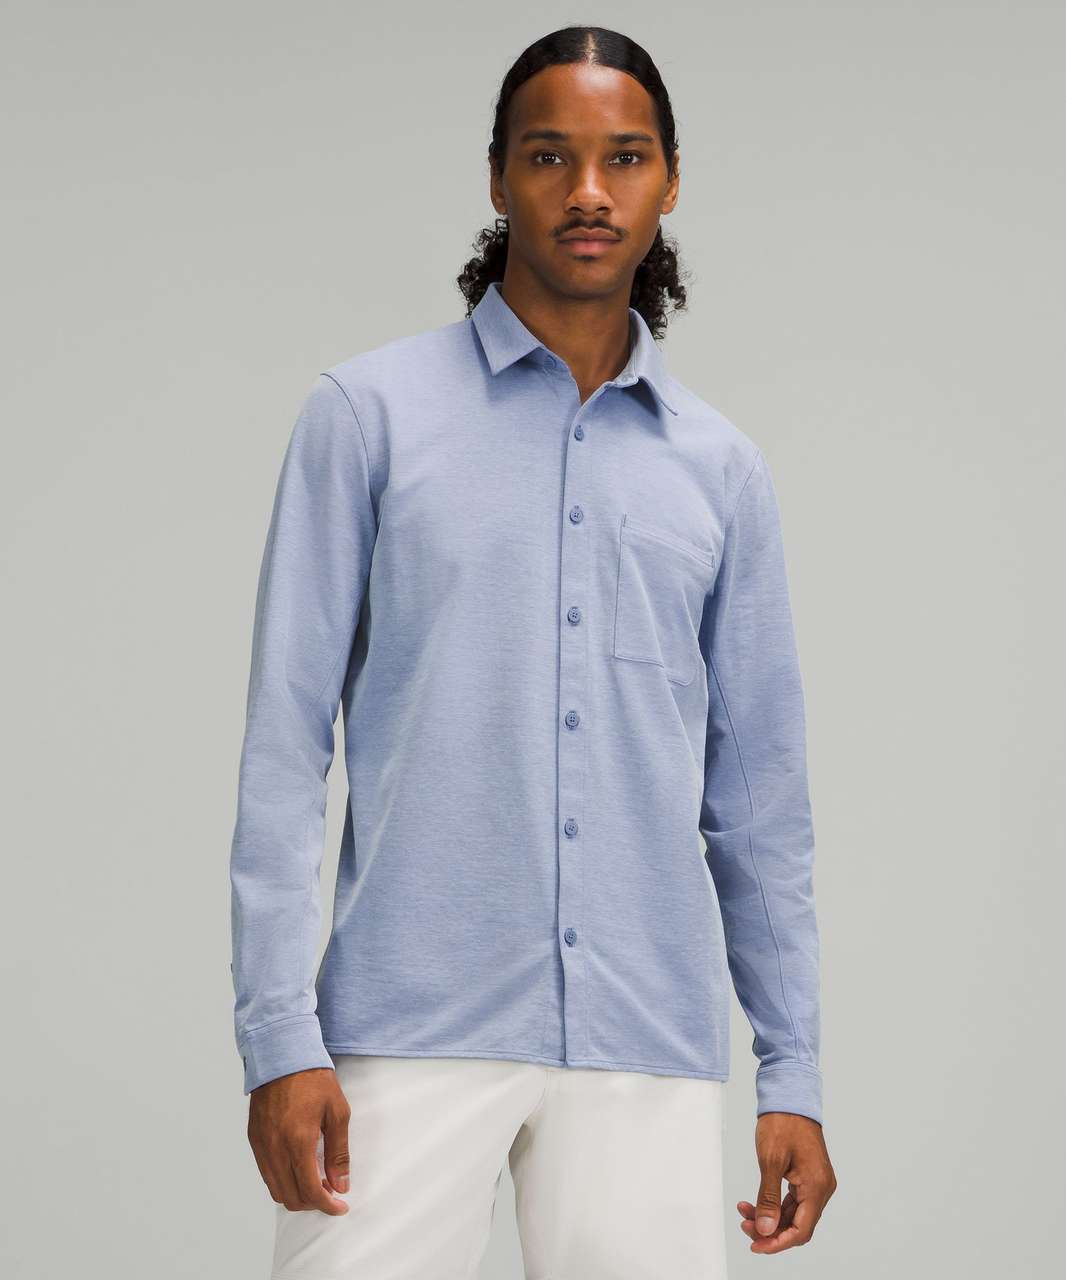 Lululemon Commission Long Sleeve Shirt - Harbor Blue / White